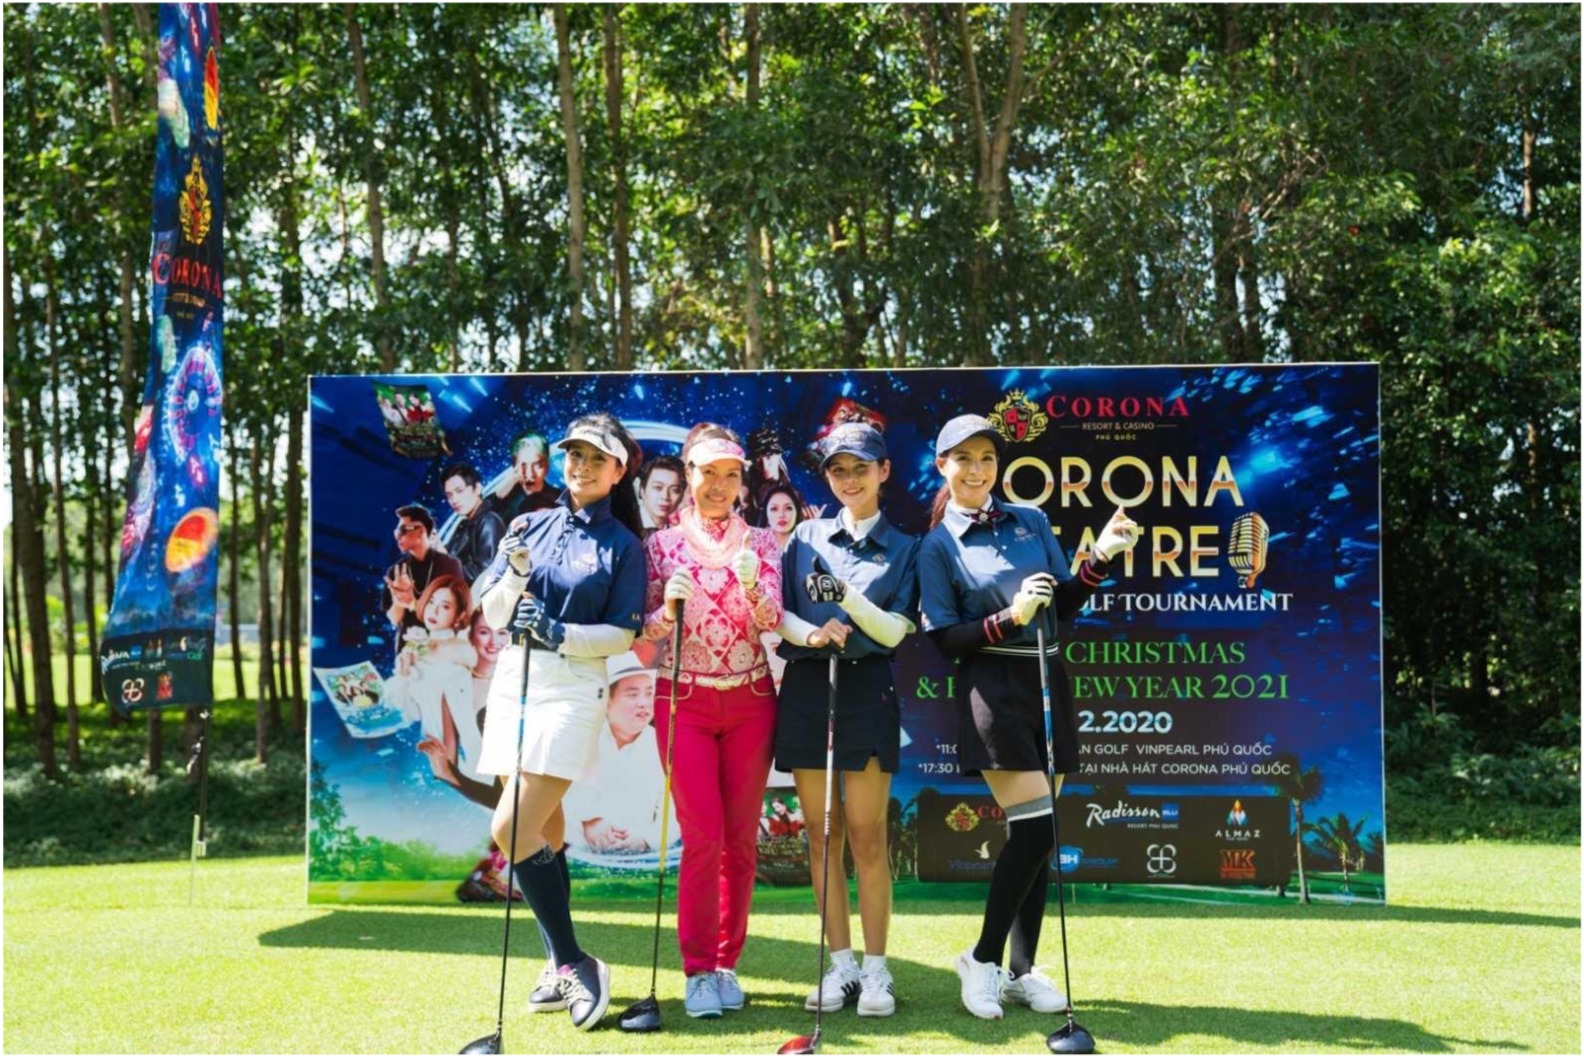 Dàn sao hội tụ tại giải đấu Corona Theatrer Phú Quốc Golf Tournament - Spring 2022 - Ảnh 3.